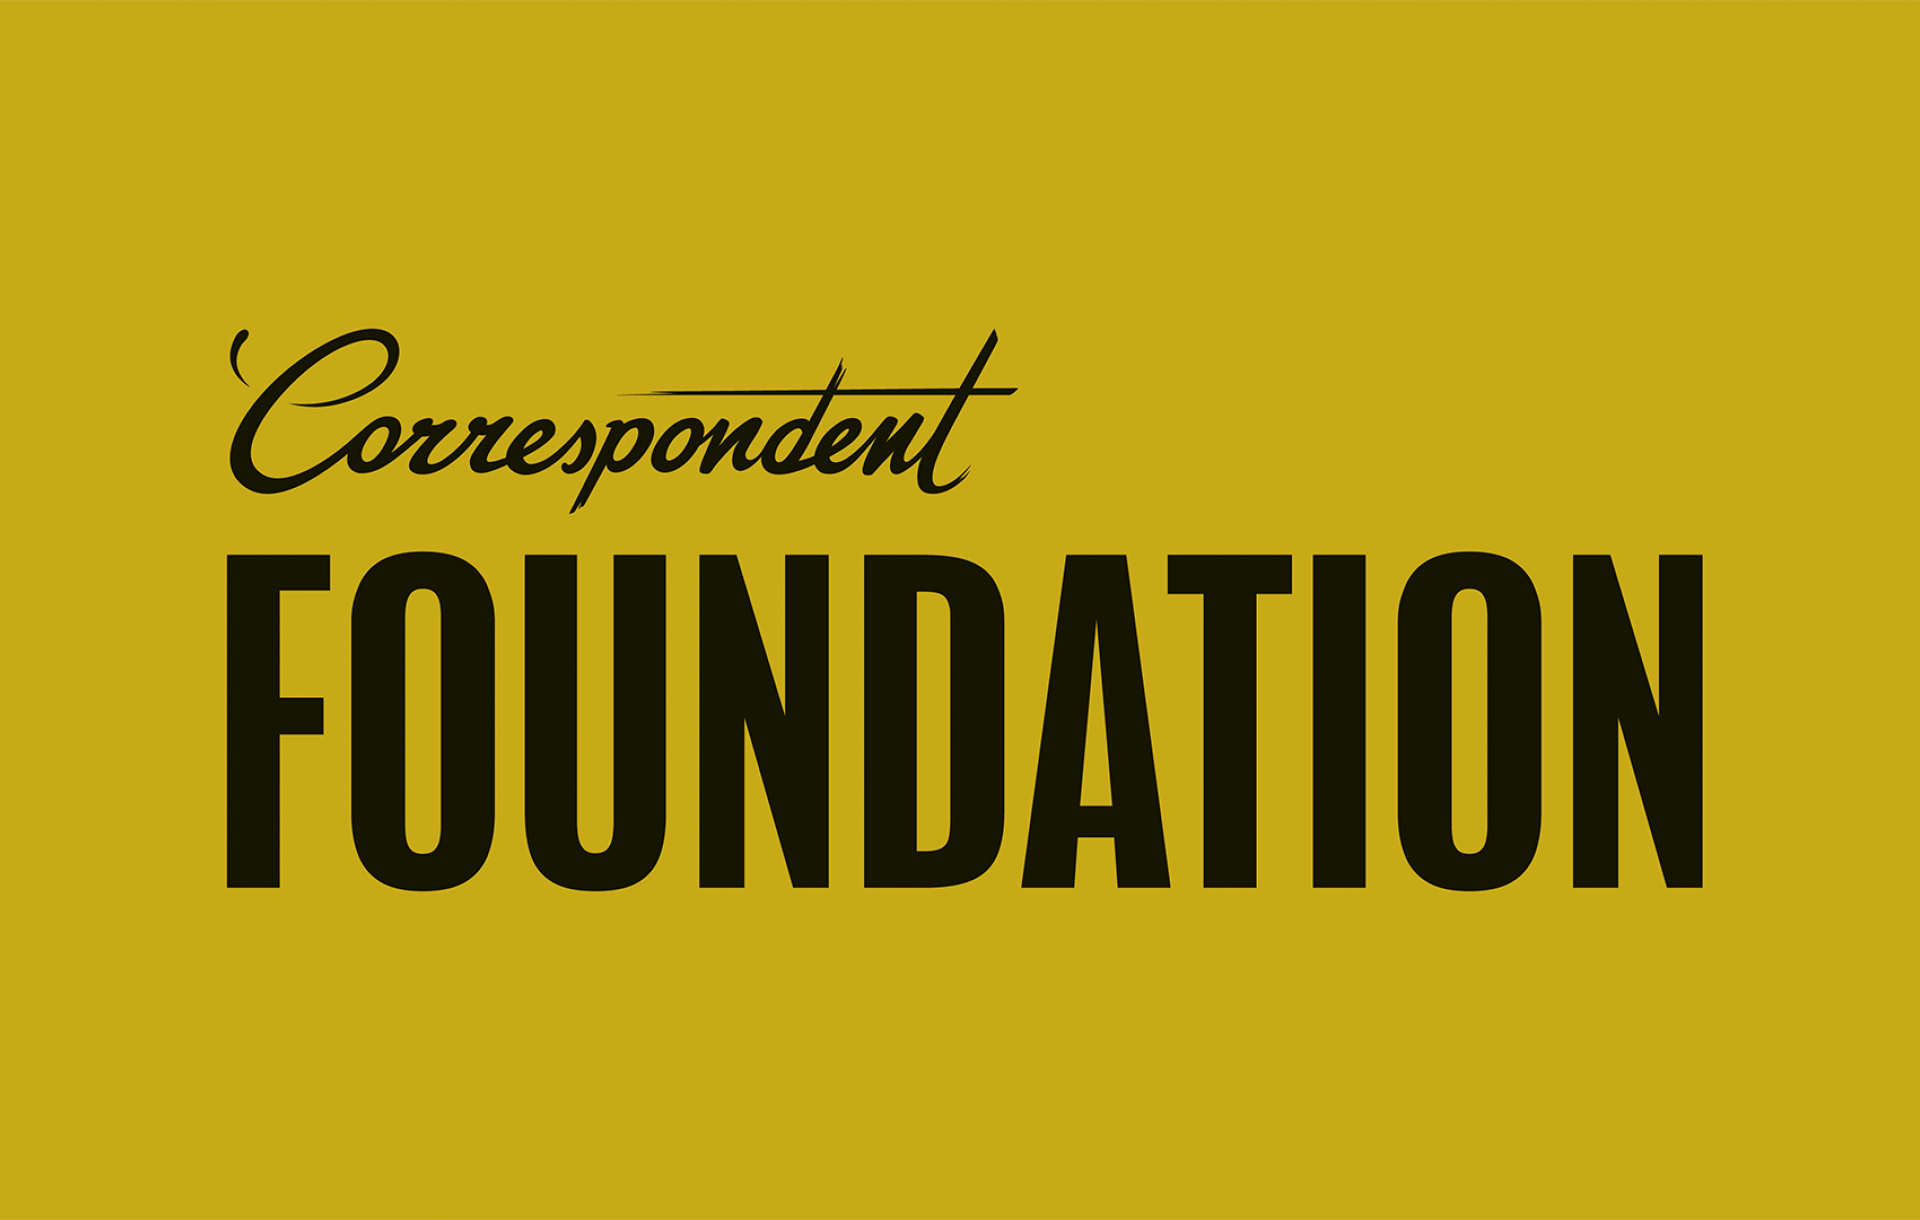 De Correspondent Foundation